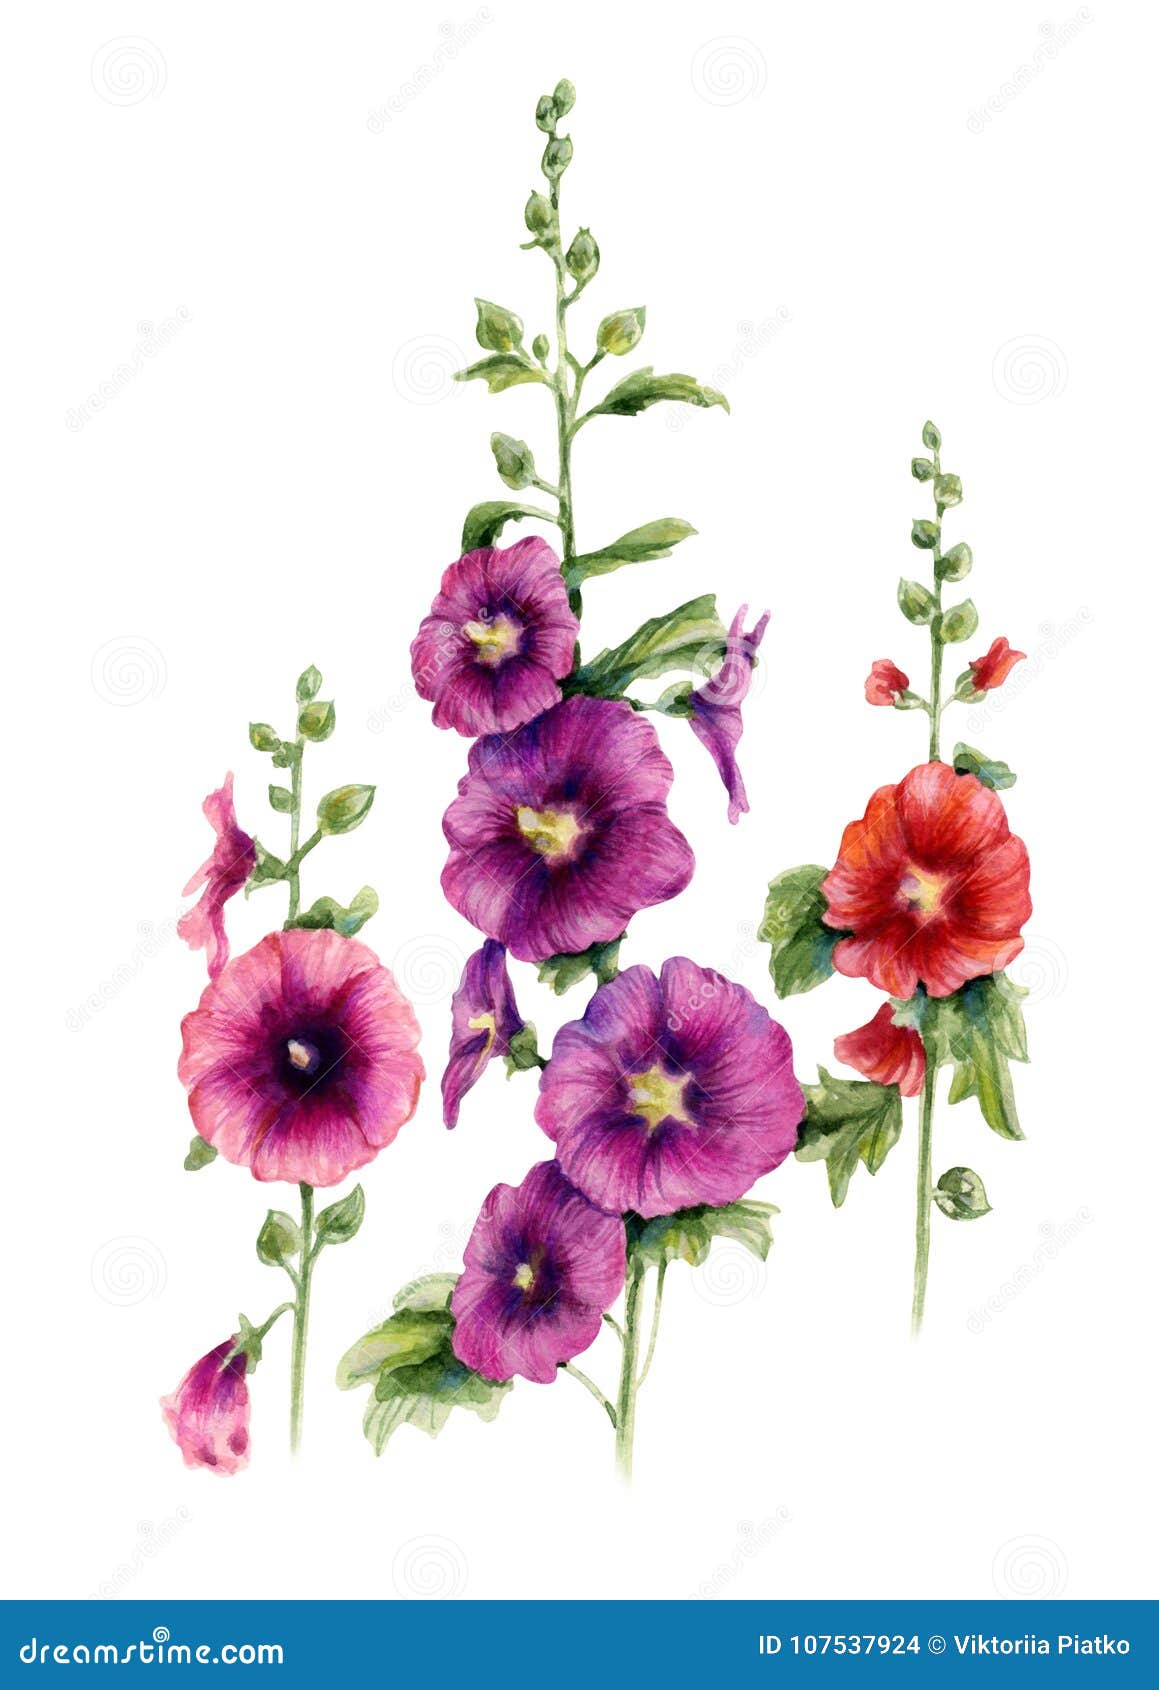 malva flowers. watercolor botanical .